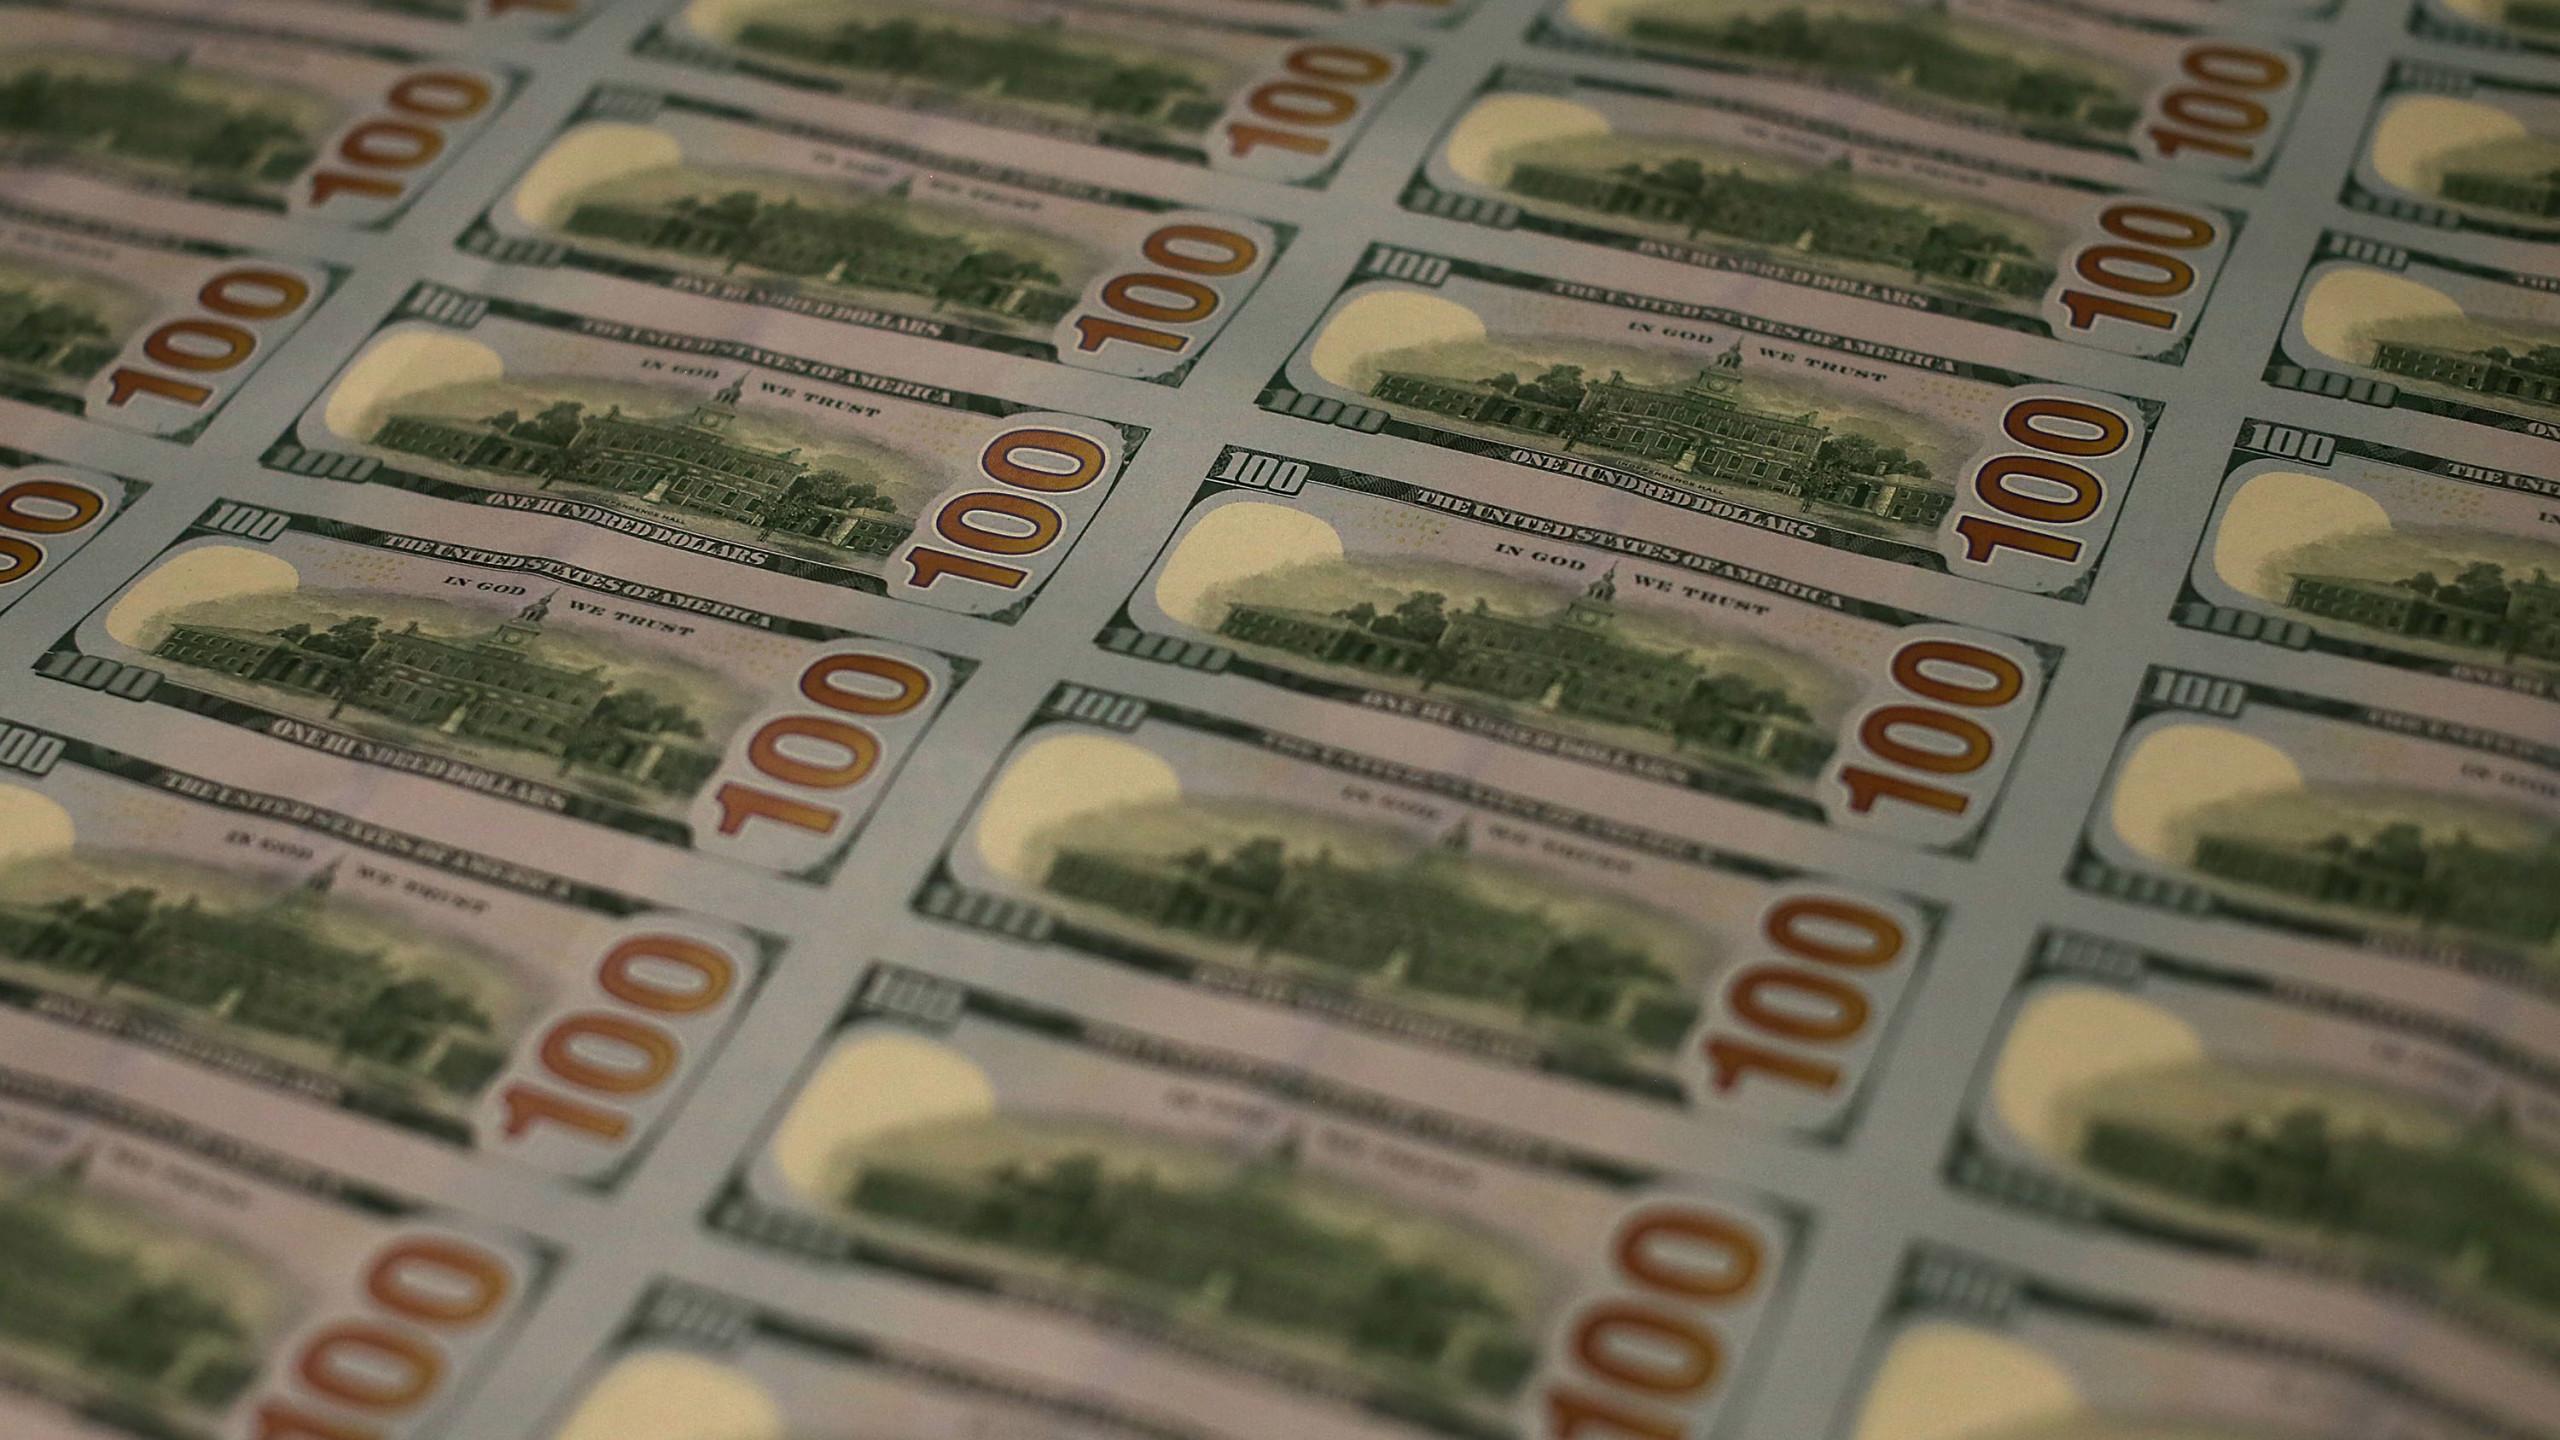 Treasure hunt to include 20 $100 bills hidden around Indy